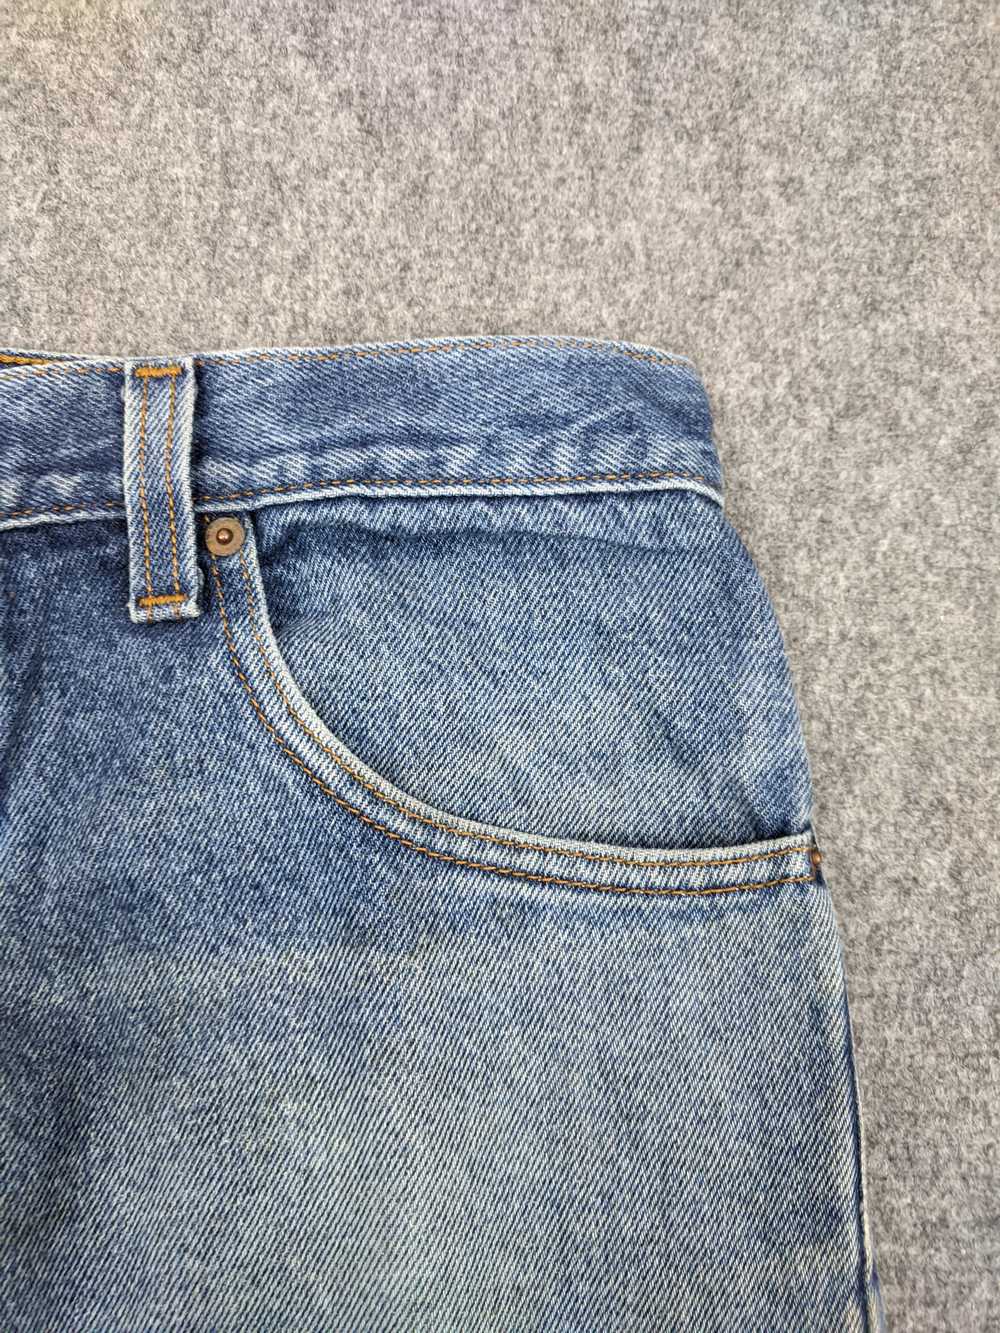 Vintage - Vintage Levis 517 Flared Bootcut Jeans - image 6